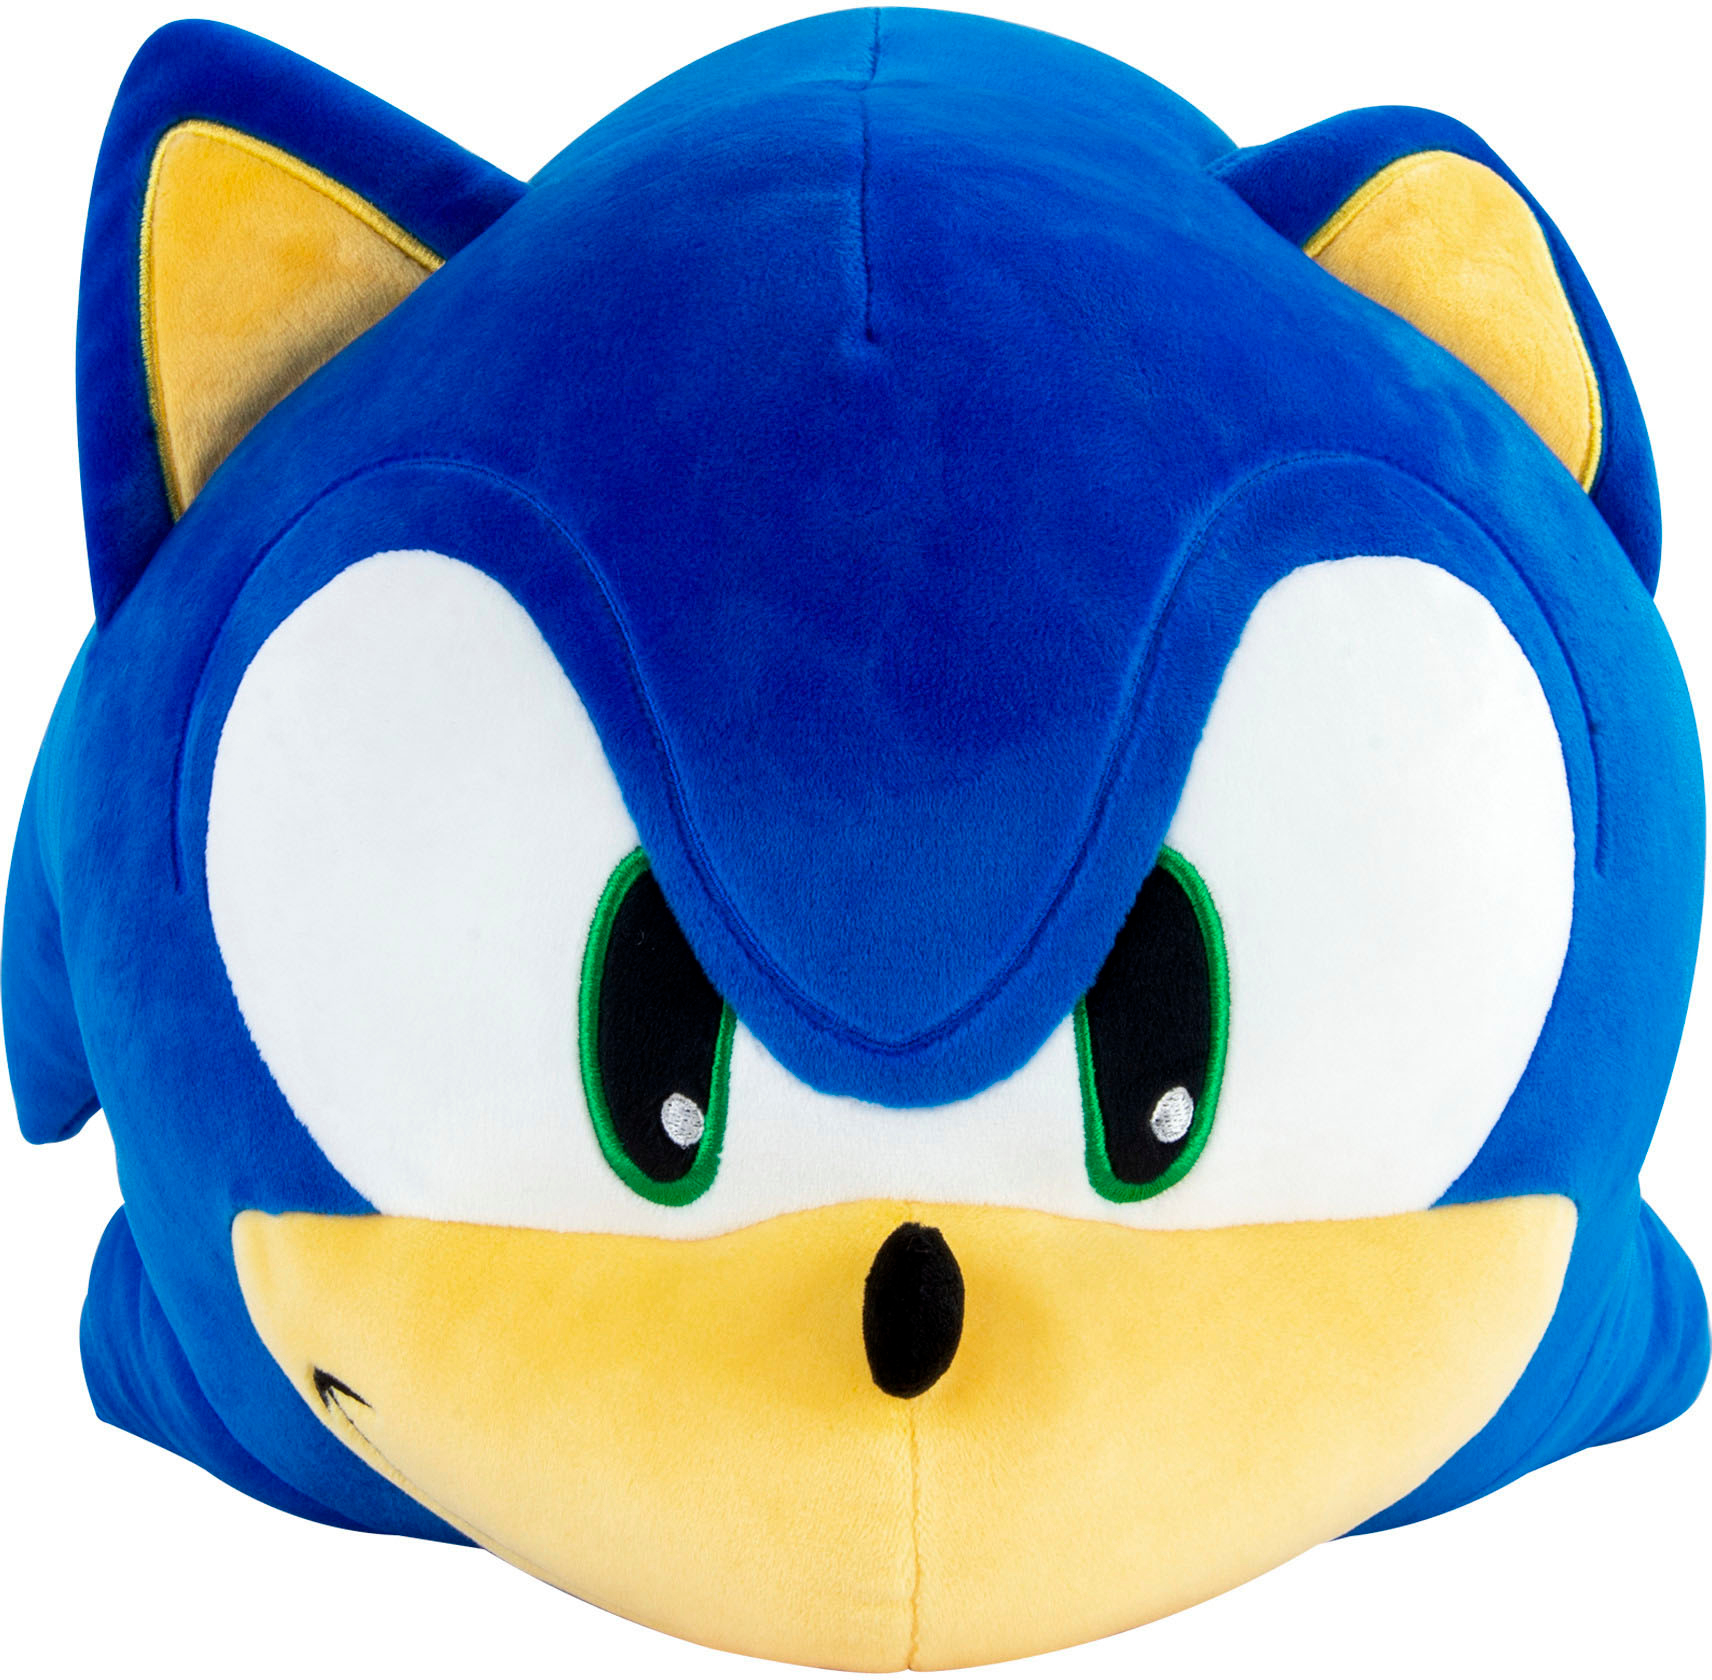 Tomy Sonic The Hedgehog Plush  Fast Ship 